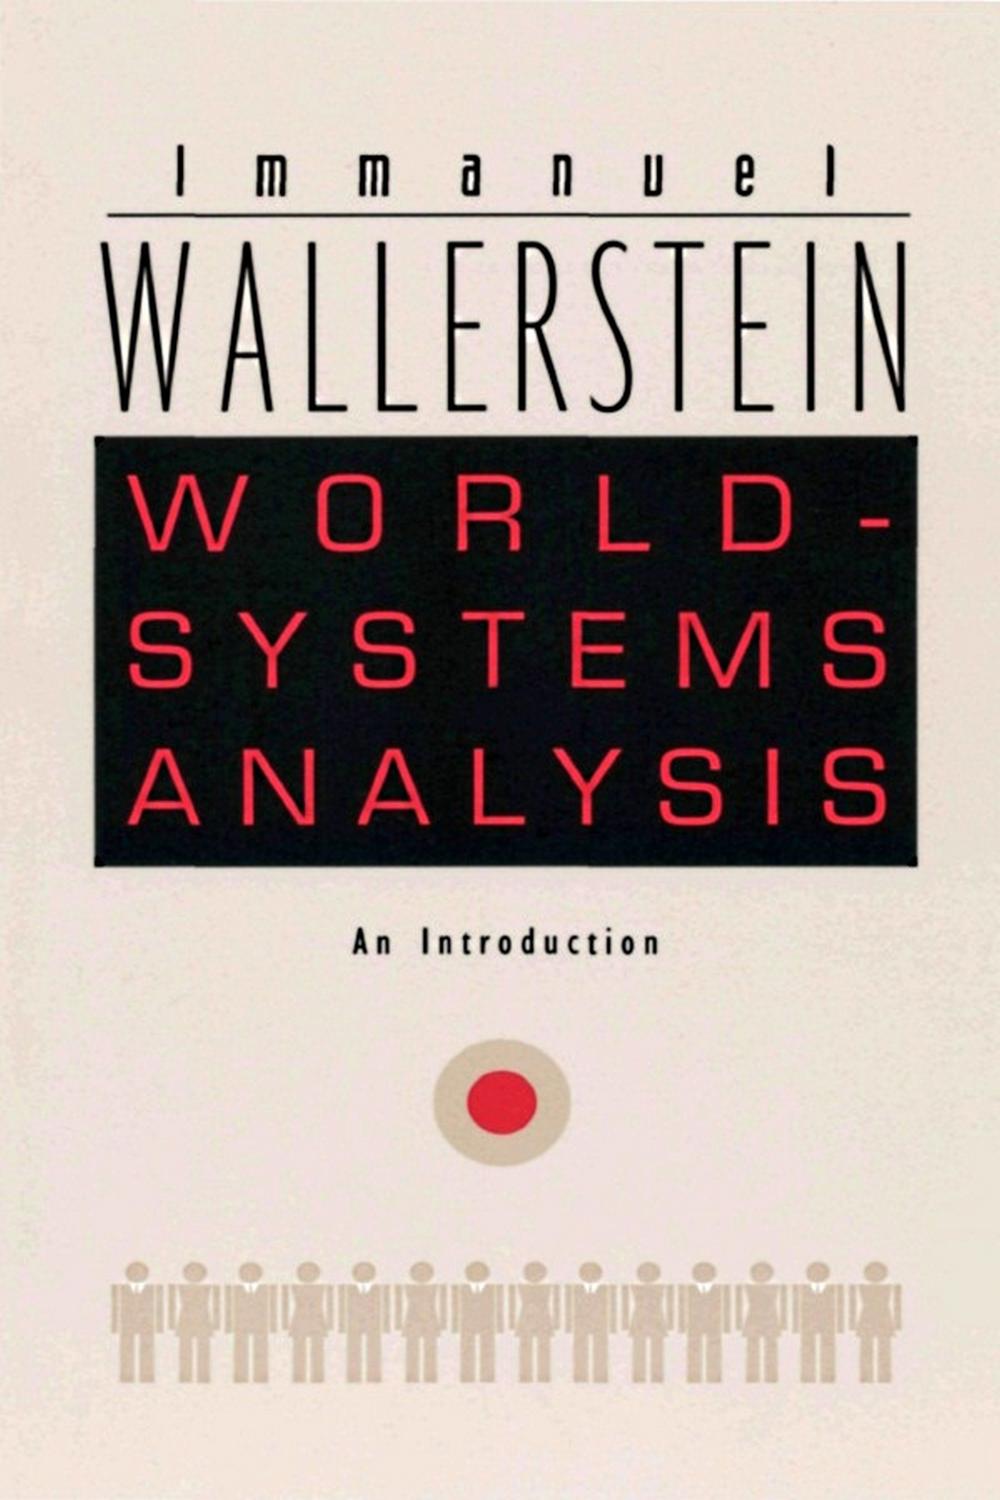 World-Systems Analysis - Immanuel Wallerstein